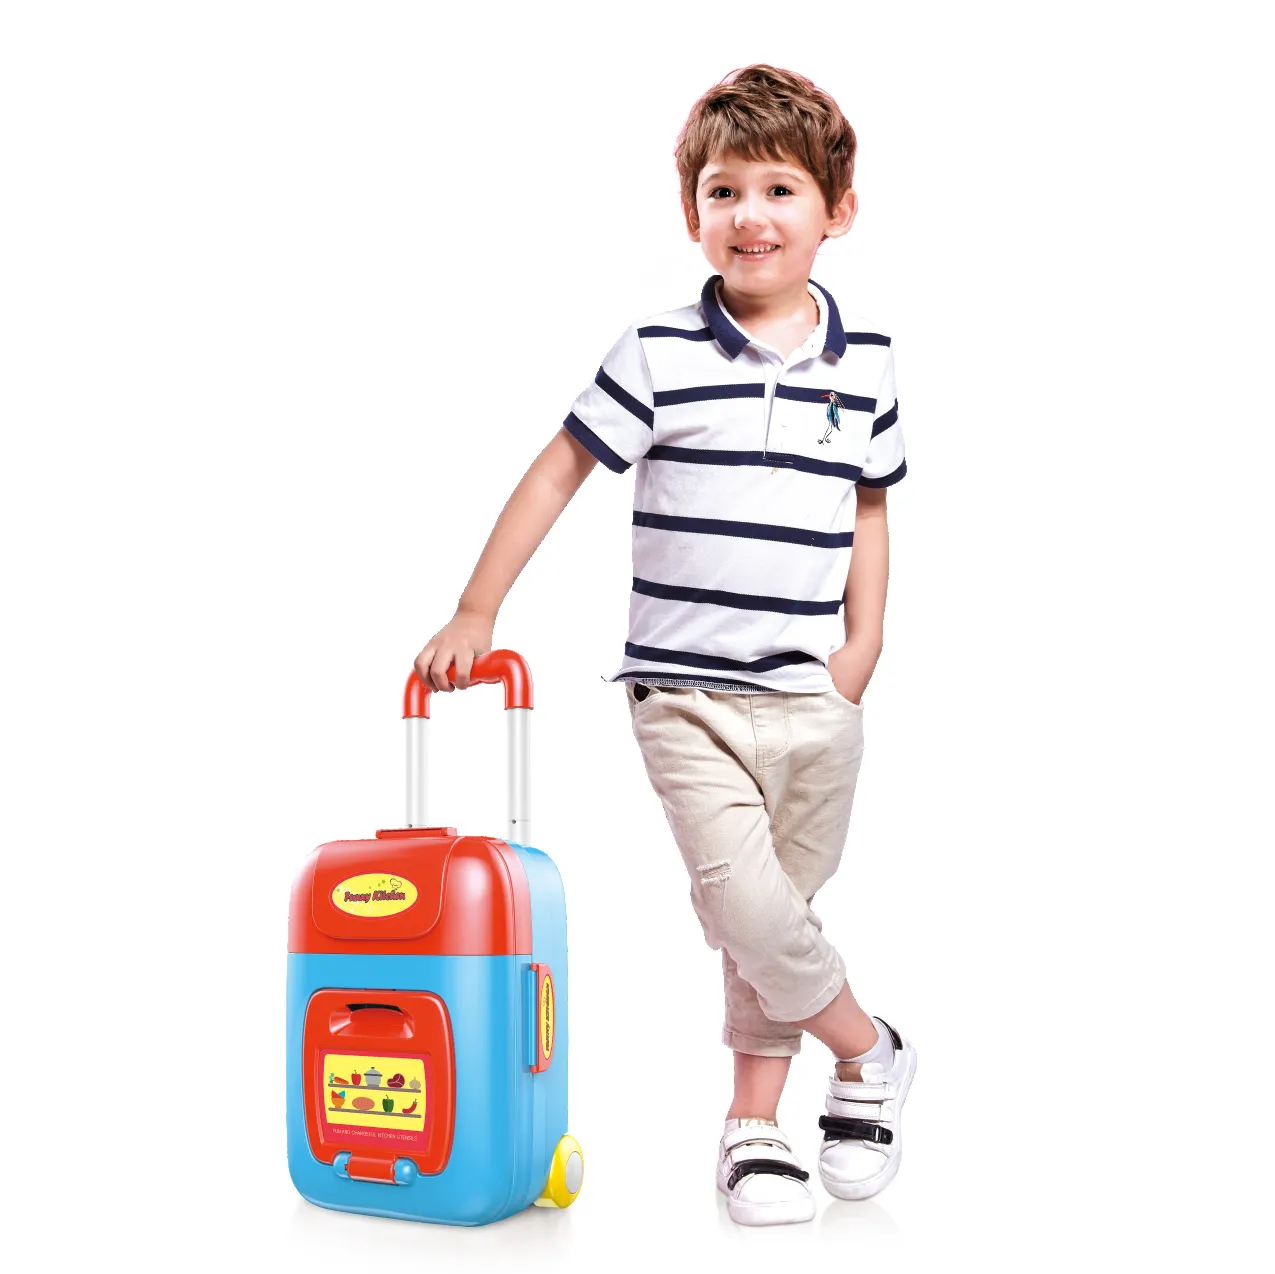 Juego de simulación preescolar en casa juguetes Juego de cocina para niños jouet trolley case